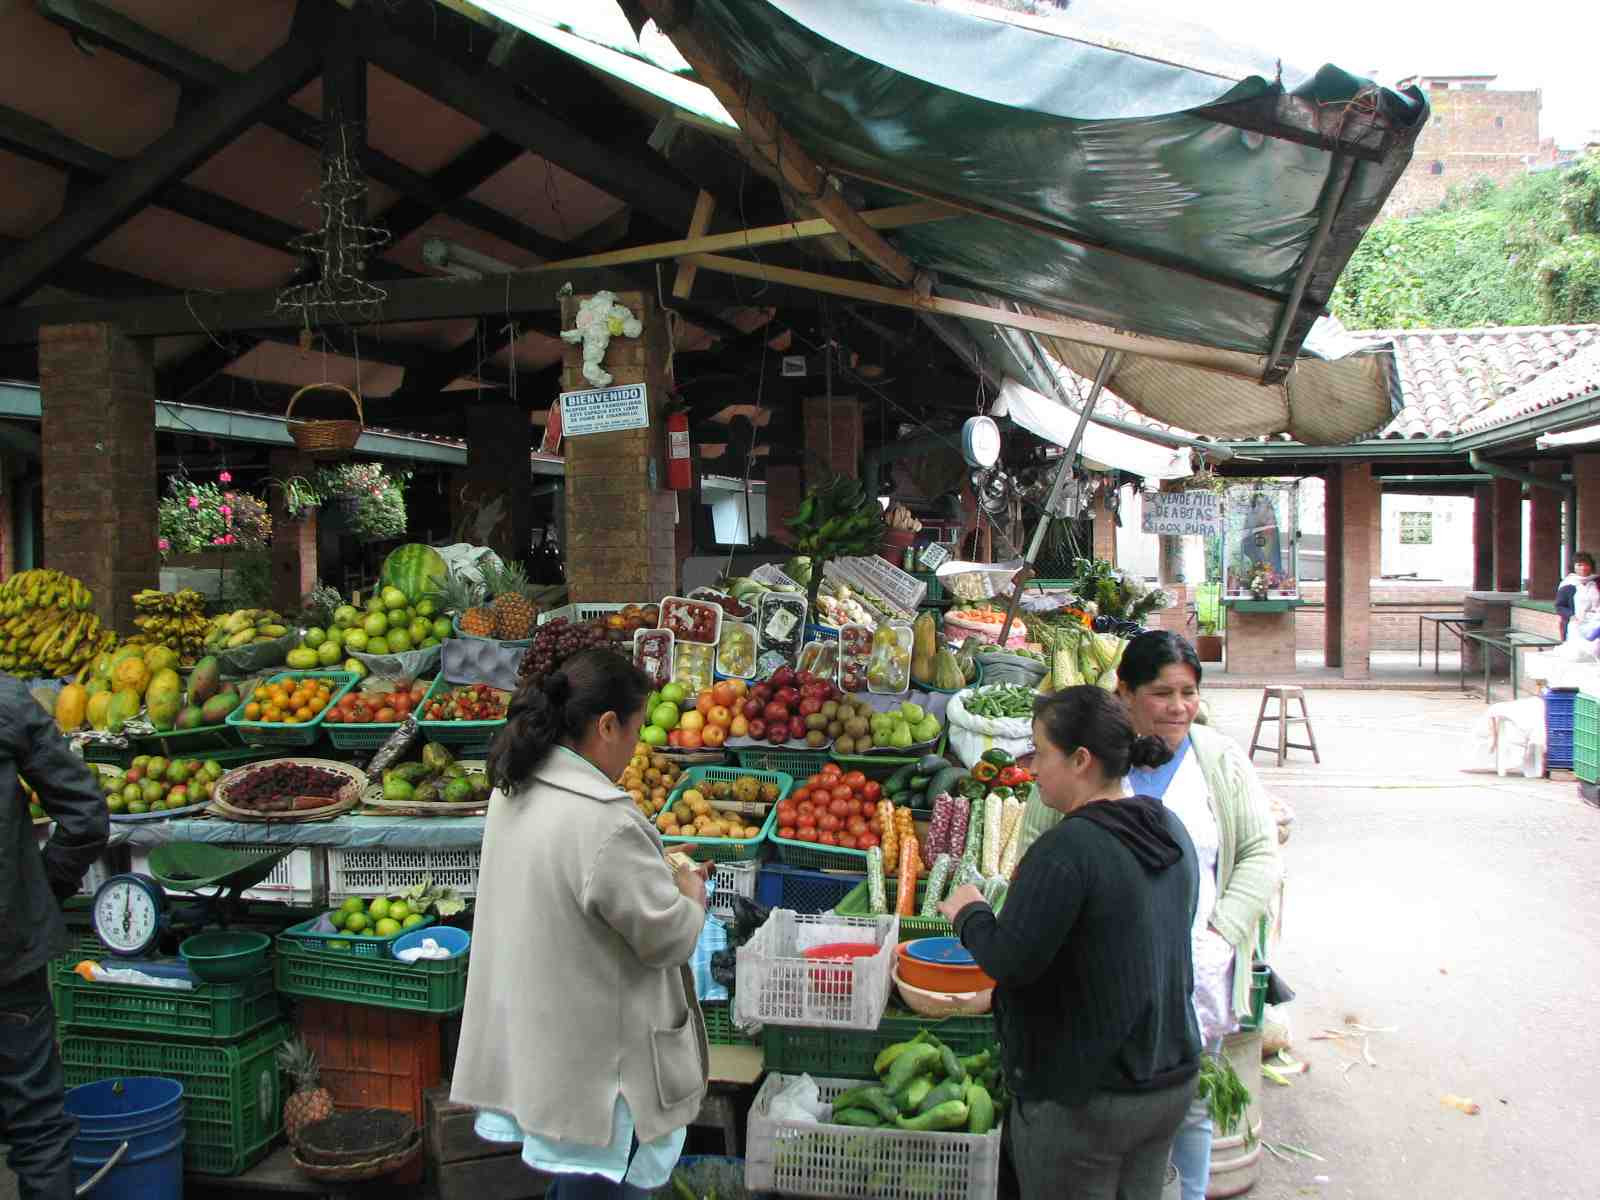 Vendors in Paloquemao, Bogotá's second-largest fruit market. Vendor di Paloquemao, pasar buah terbesar kedua Bogotá.